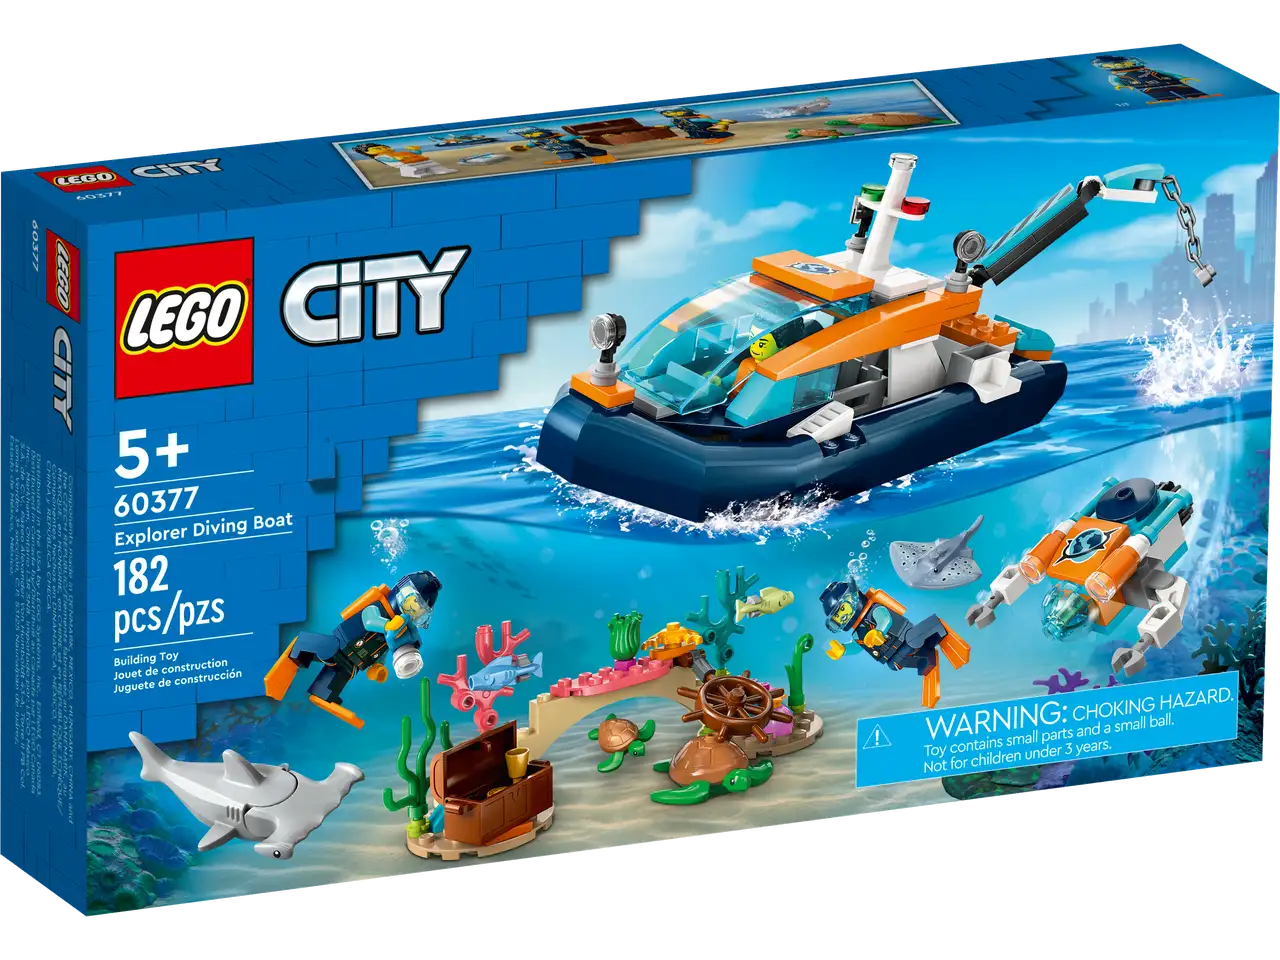 Explorer Diving Boat Lego Set